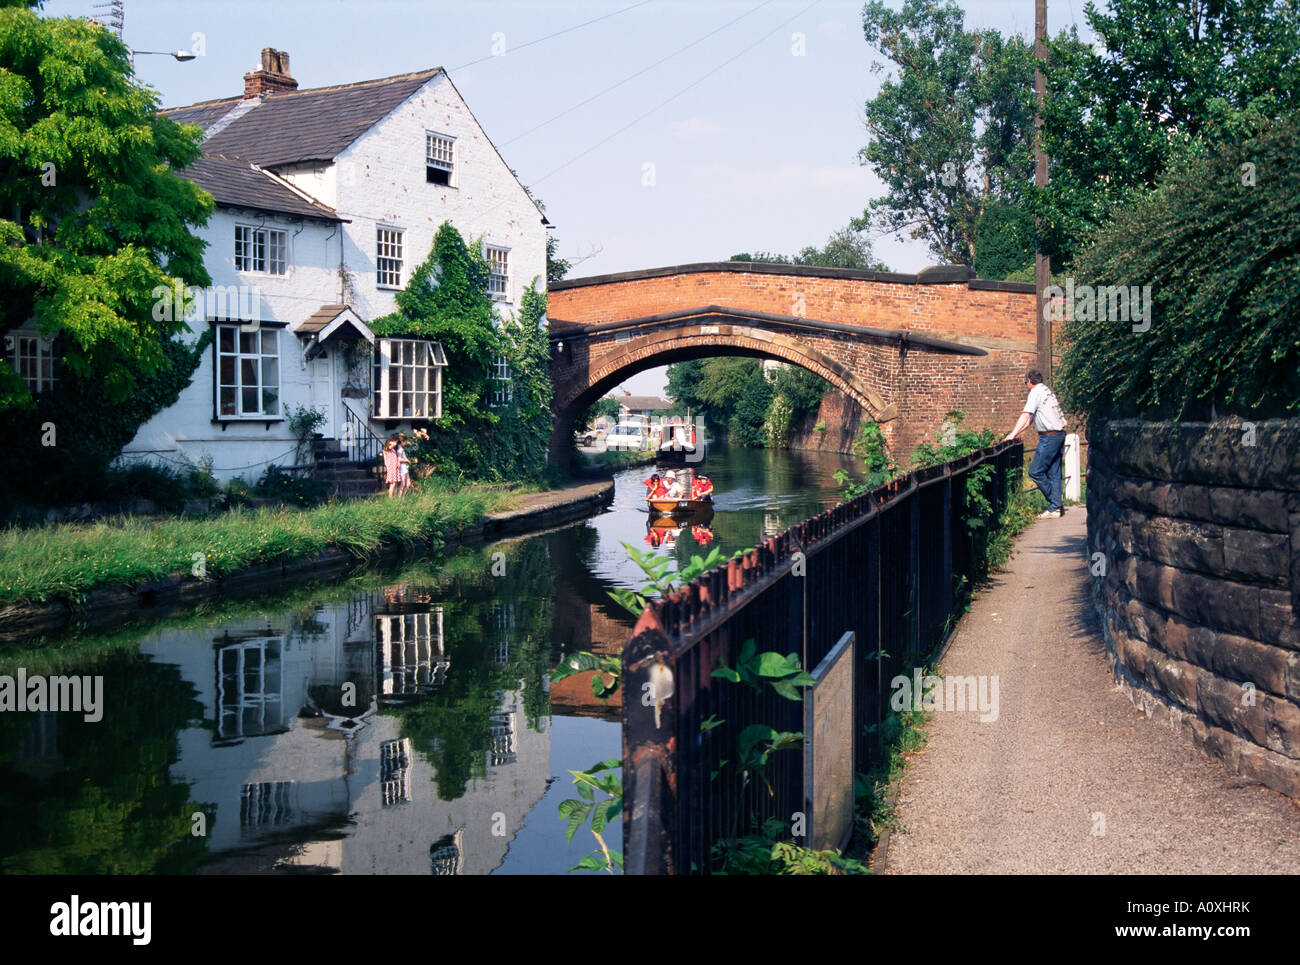 Canal de Bridgewater achevé en 1767 Lymm Cheshire England Royaume-Uni Europe Banque D'Images